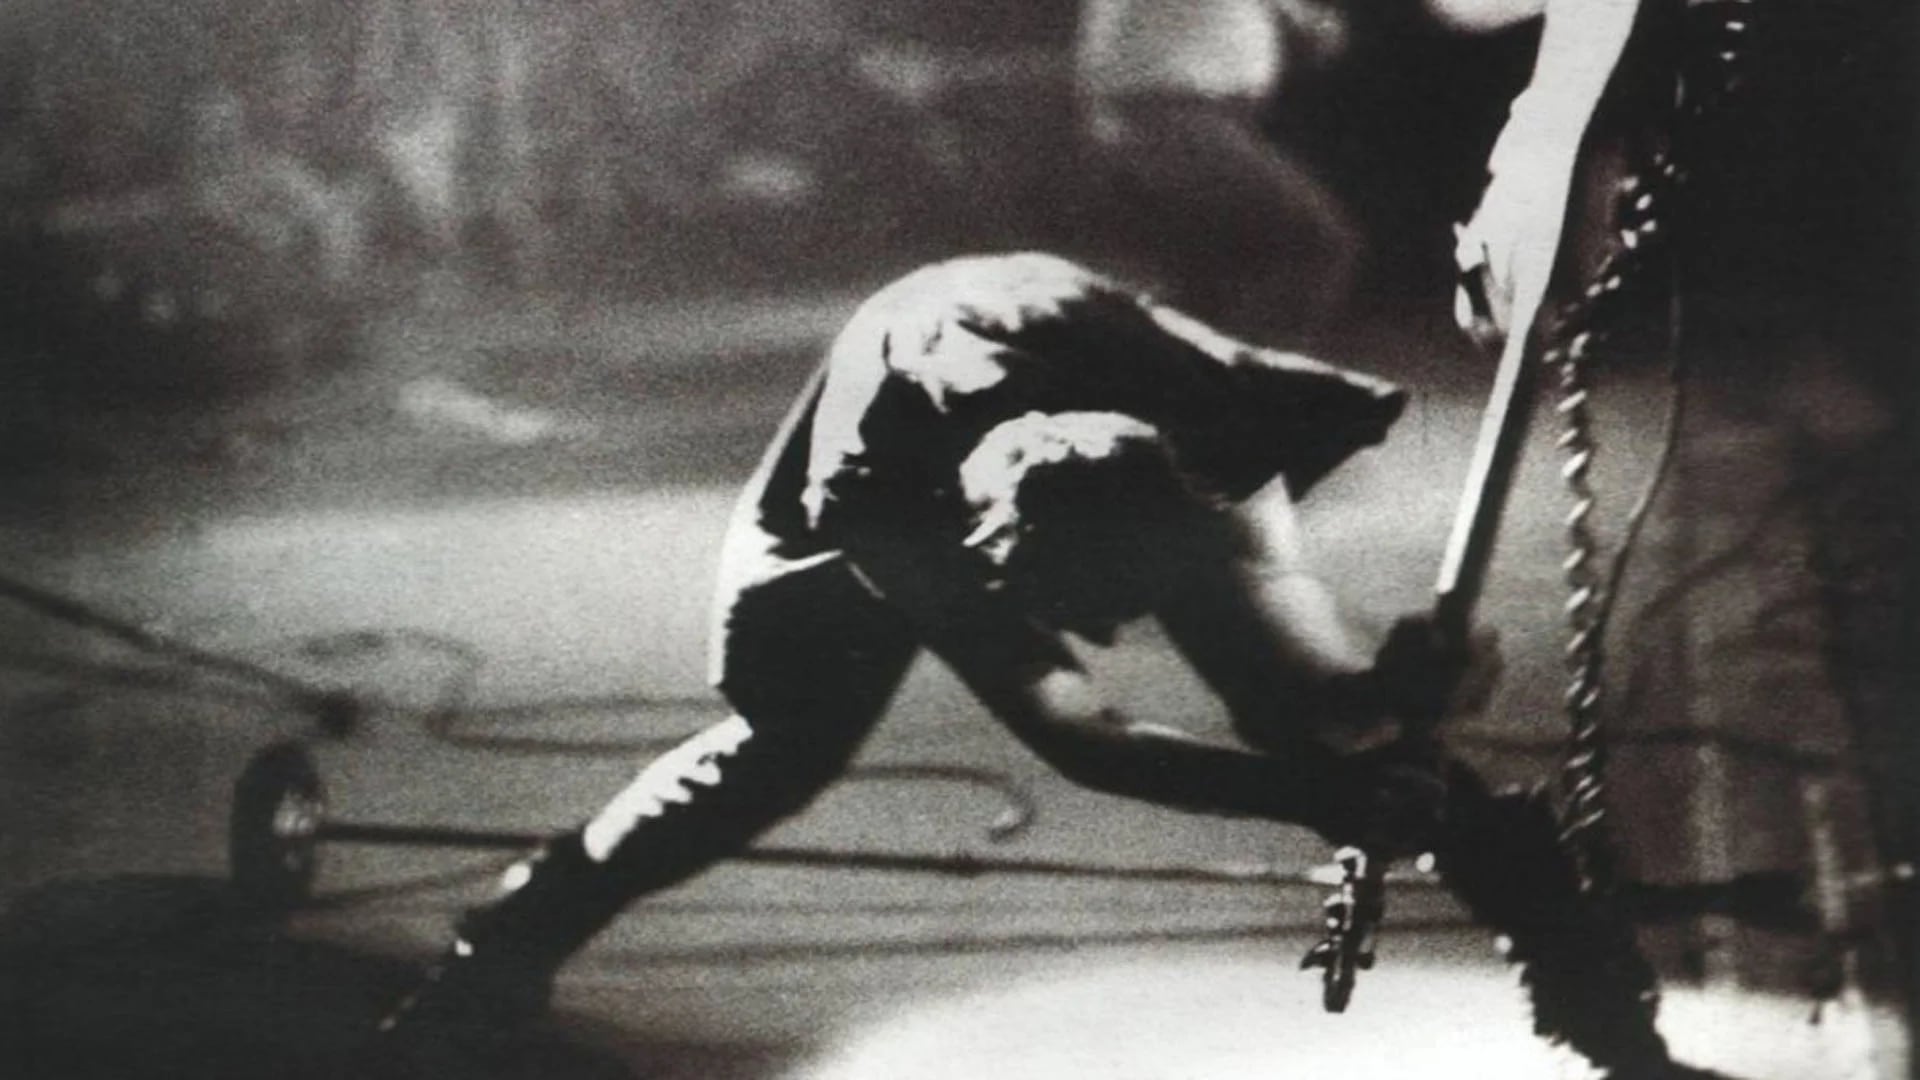 Paul Simonon de The Clash golpeando su bajo contra el escenario en un show